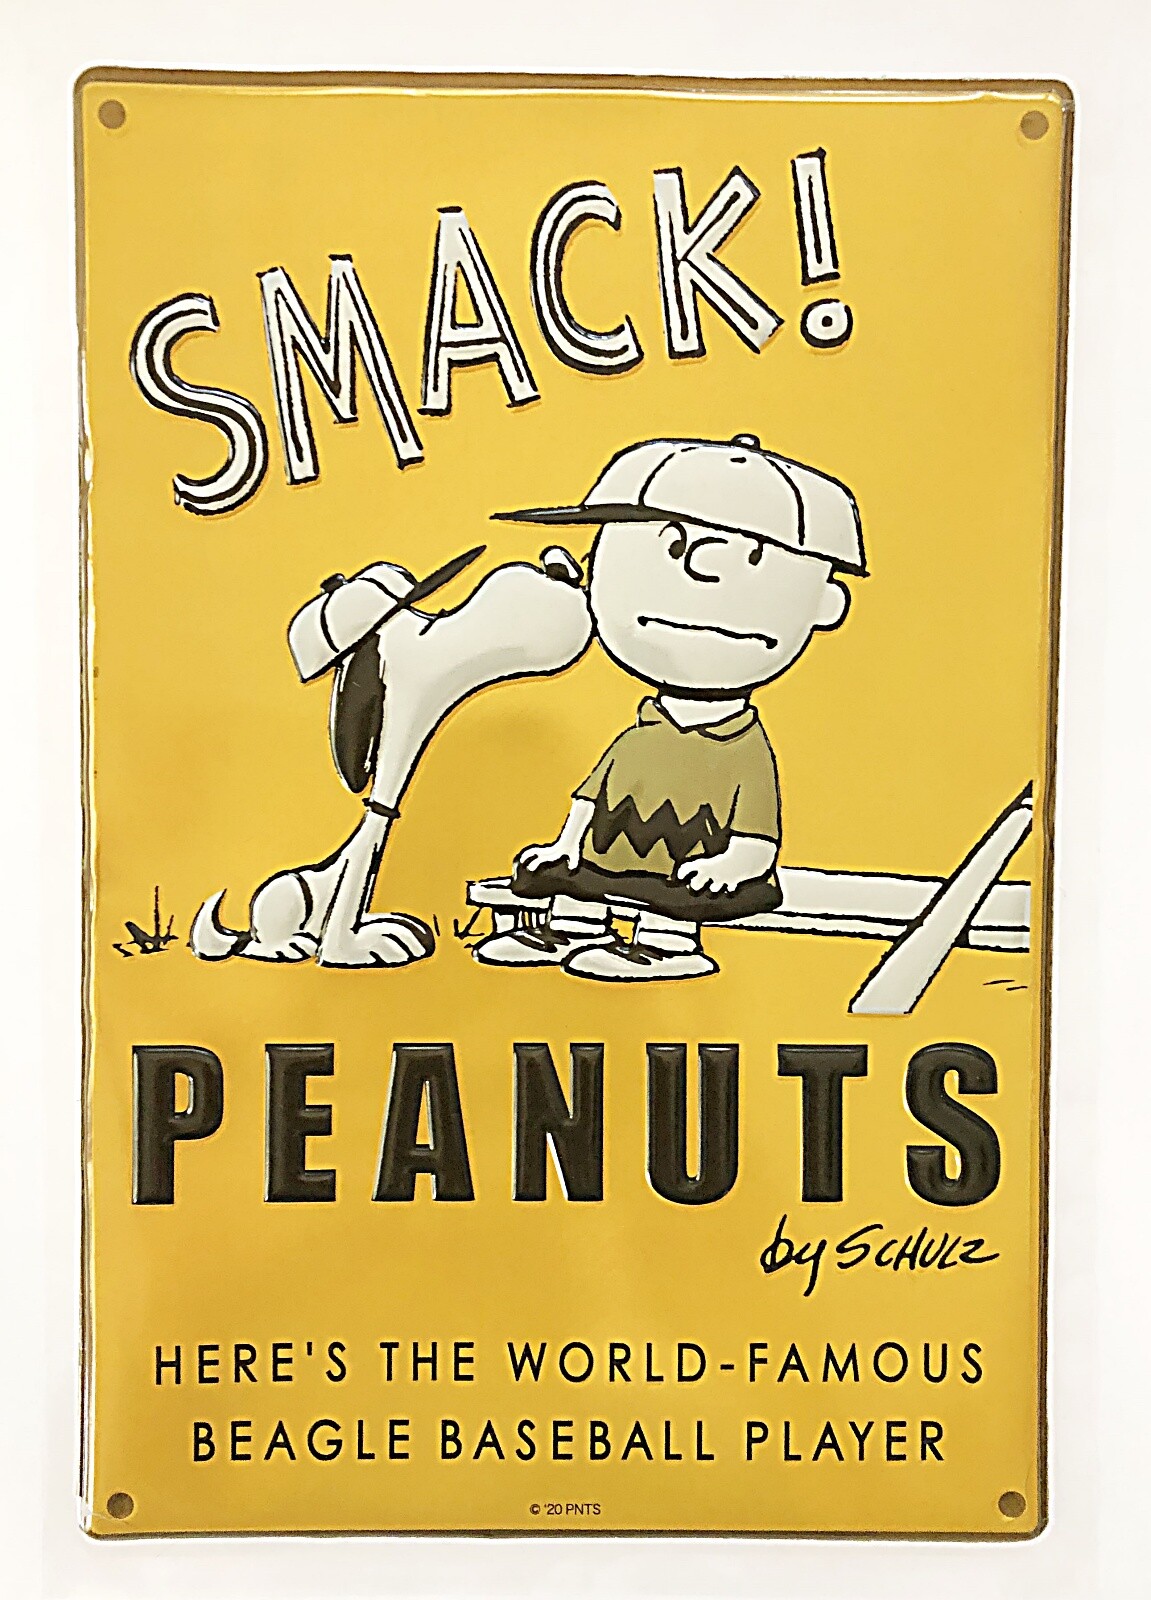 楽天市場 送料無料 スヌーピー ジョークール Joe Cool ピーナッツ Peanuts Snoopy 貼って剥がせる ぷっくり立体 ナンバープレート ウォールステッカー Pvc 壁紙 W385 H170 D5mm Pwd16 Decoste